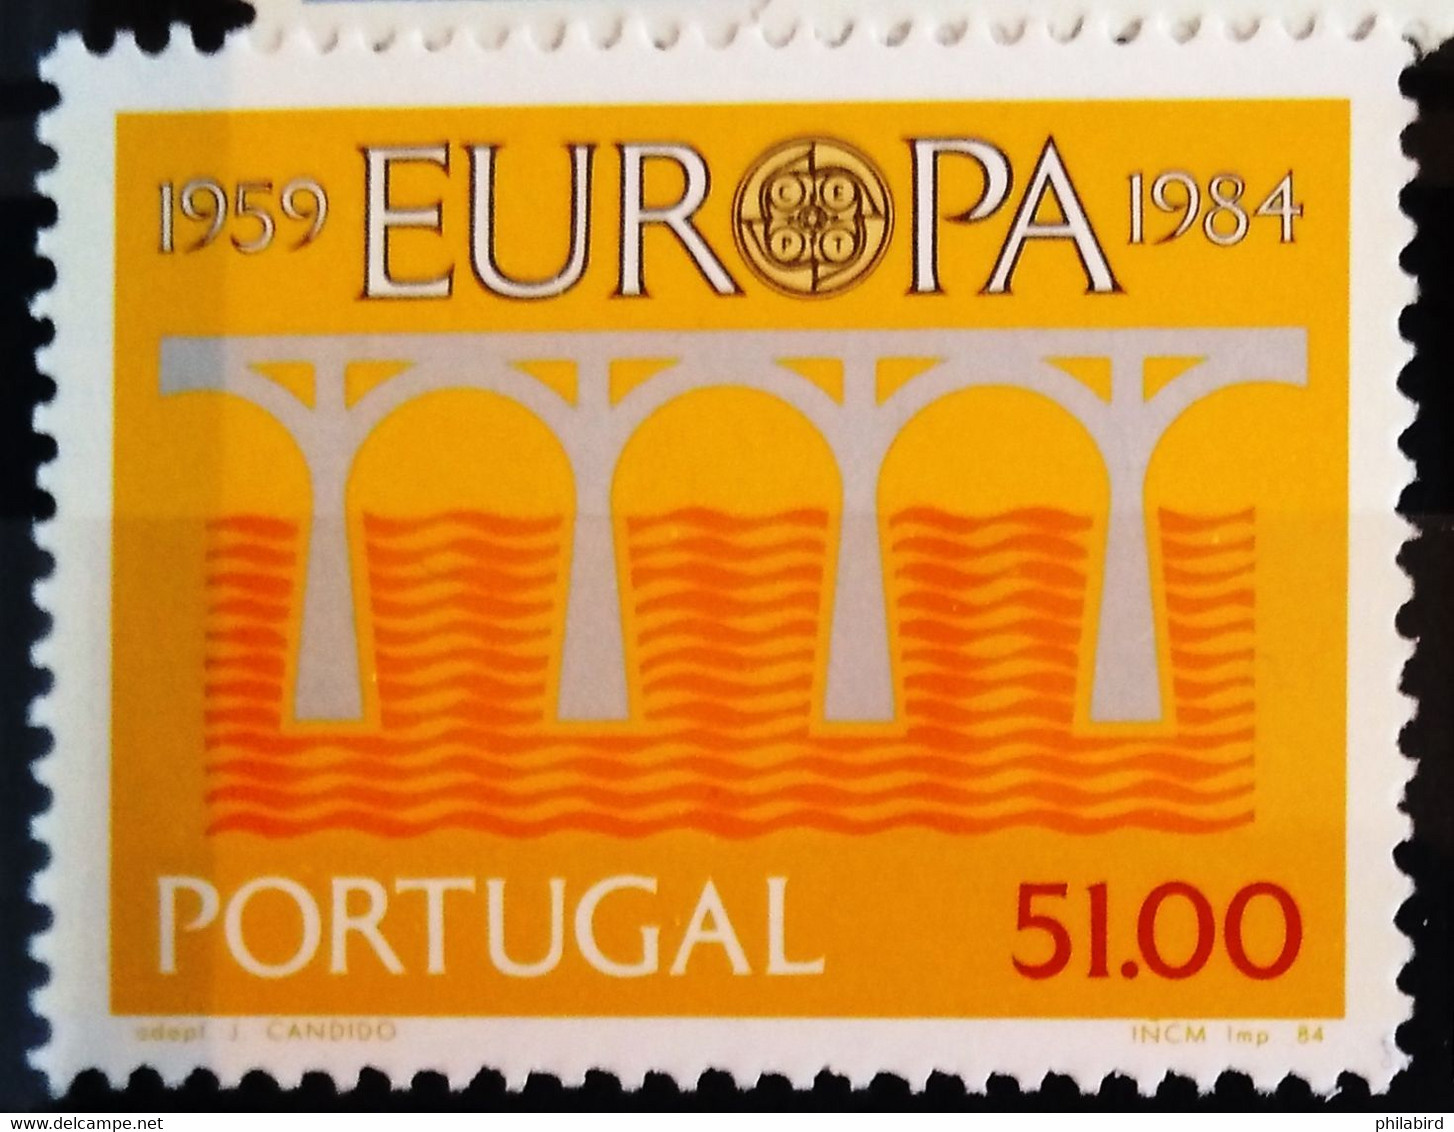 EUROPA 1984 - PORTUGAL                 N° 1609                        NEUF** - 1984